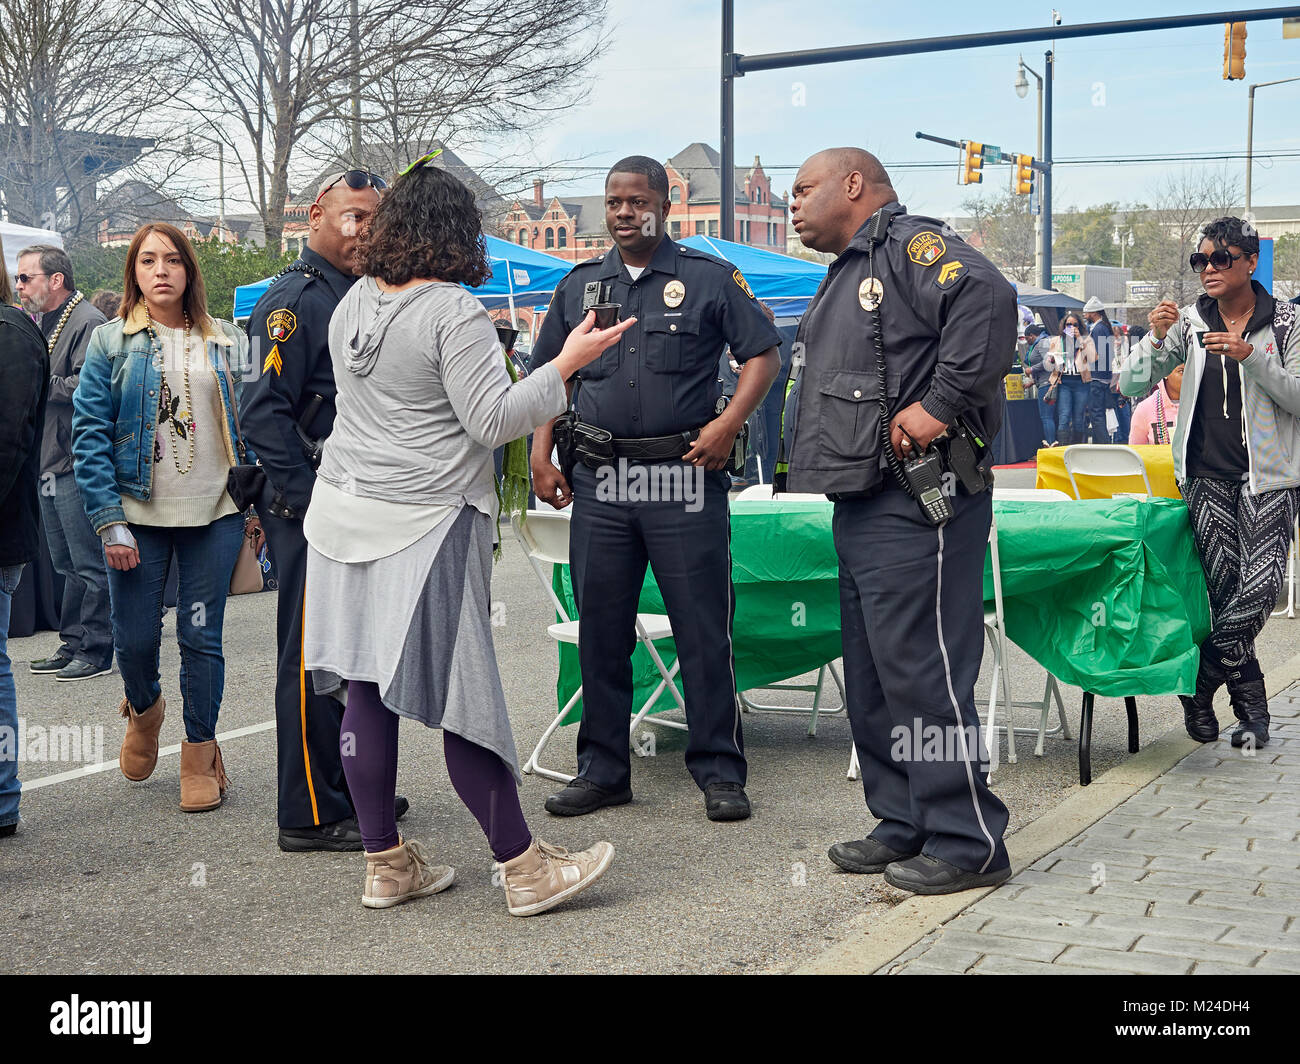 Drei Afrikanische amerikanische Polizisten höflich sprechen mit einer erwachsenen Frau an einer Feier in Montgomery Alabama, Vereinigte Staaten. Stockfoto